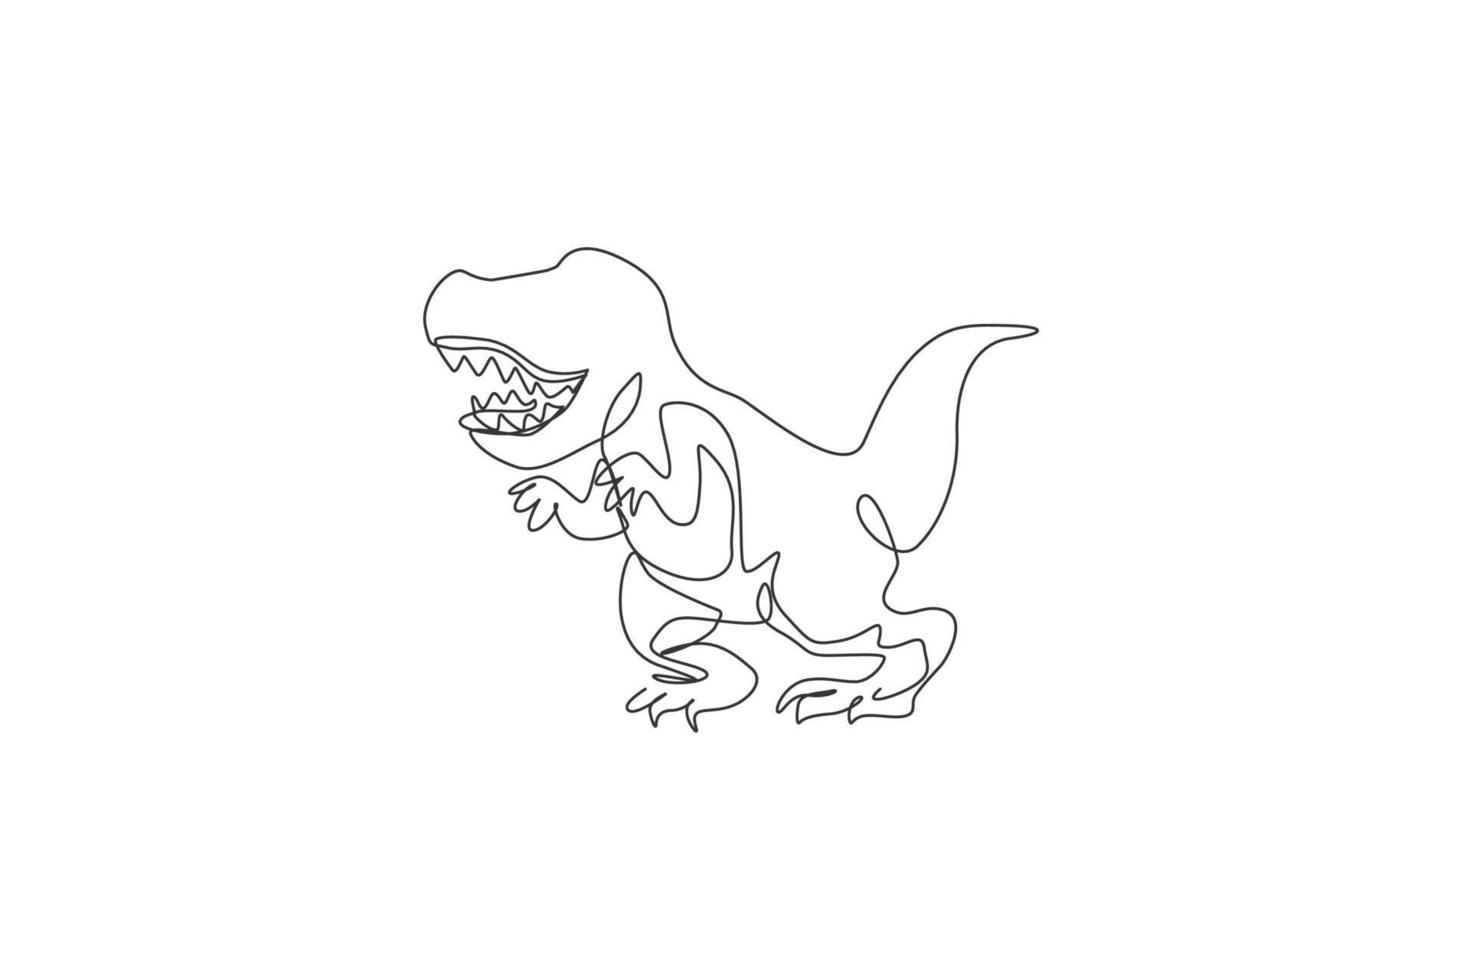 een doorlopende lijntekening van een brullende tyrannosaurus rex dinosaurus. prehistorisch museum logo concept. dynamische enkele lijn tekenen grafisch ontwerp vectorillustratie vector